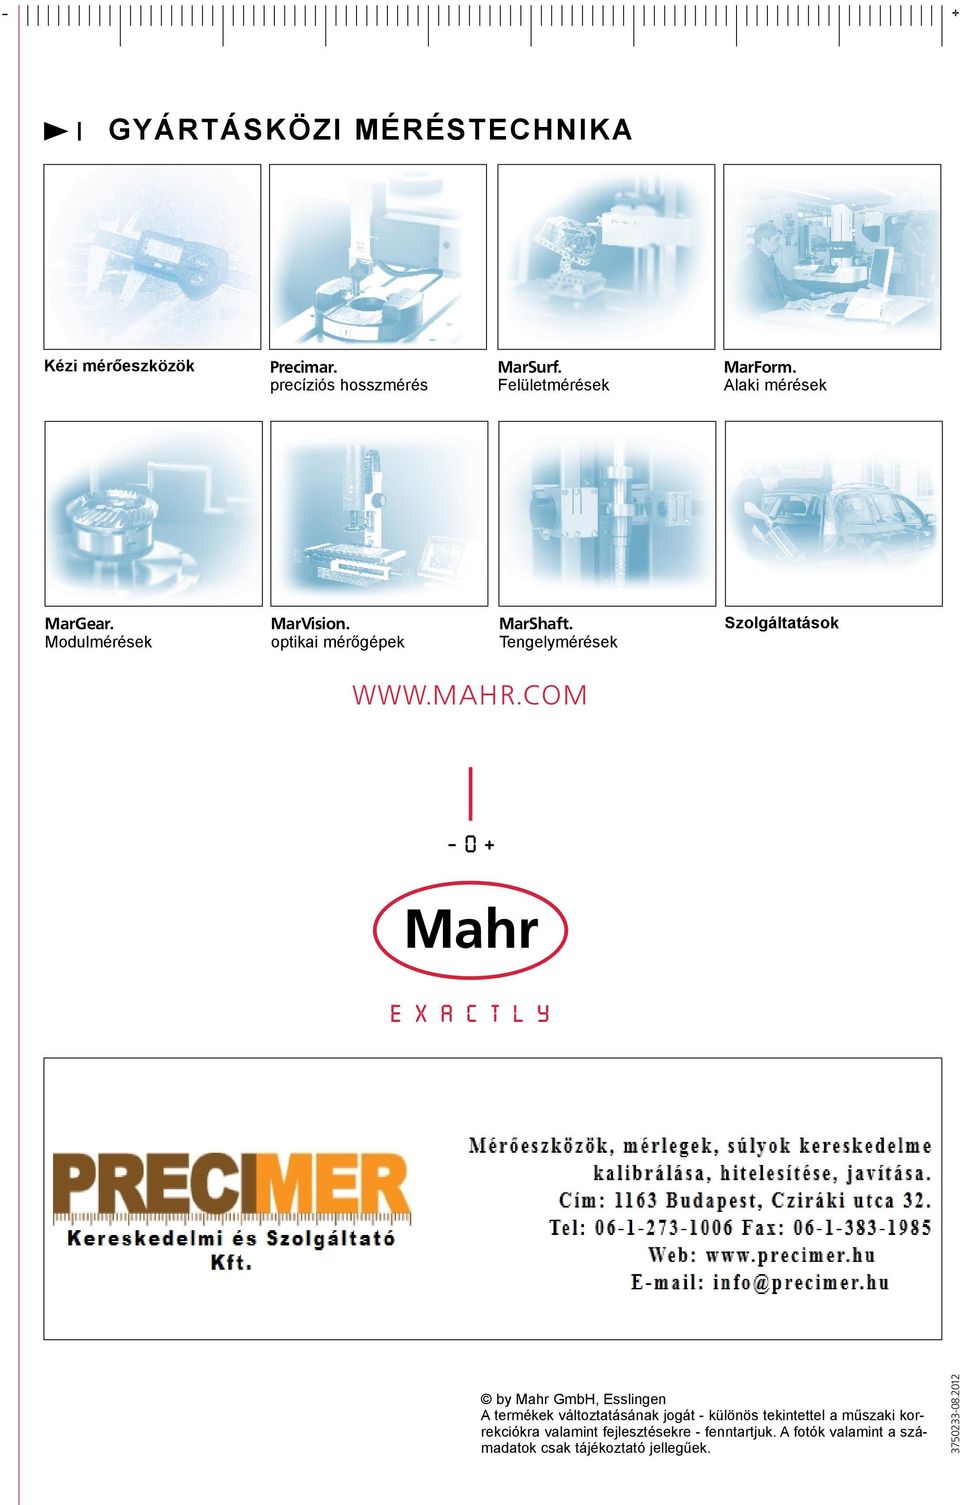 mahr.com by Mahr GmbH, Esslingen A termékek változtatásának jogát - különös tekintettel a műszaki korrekciókra